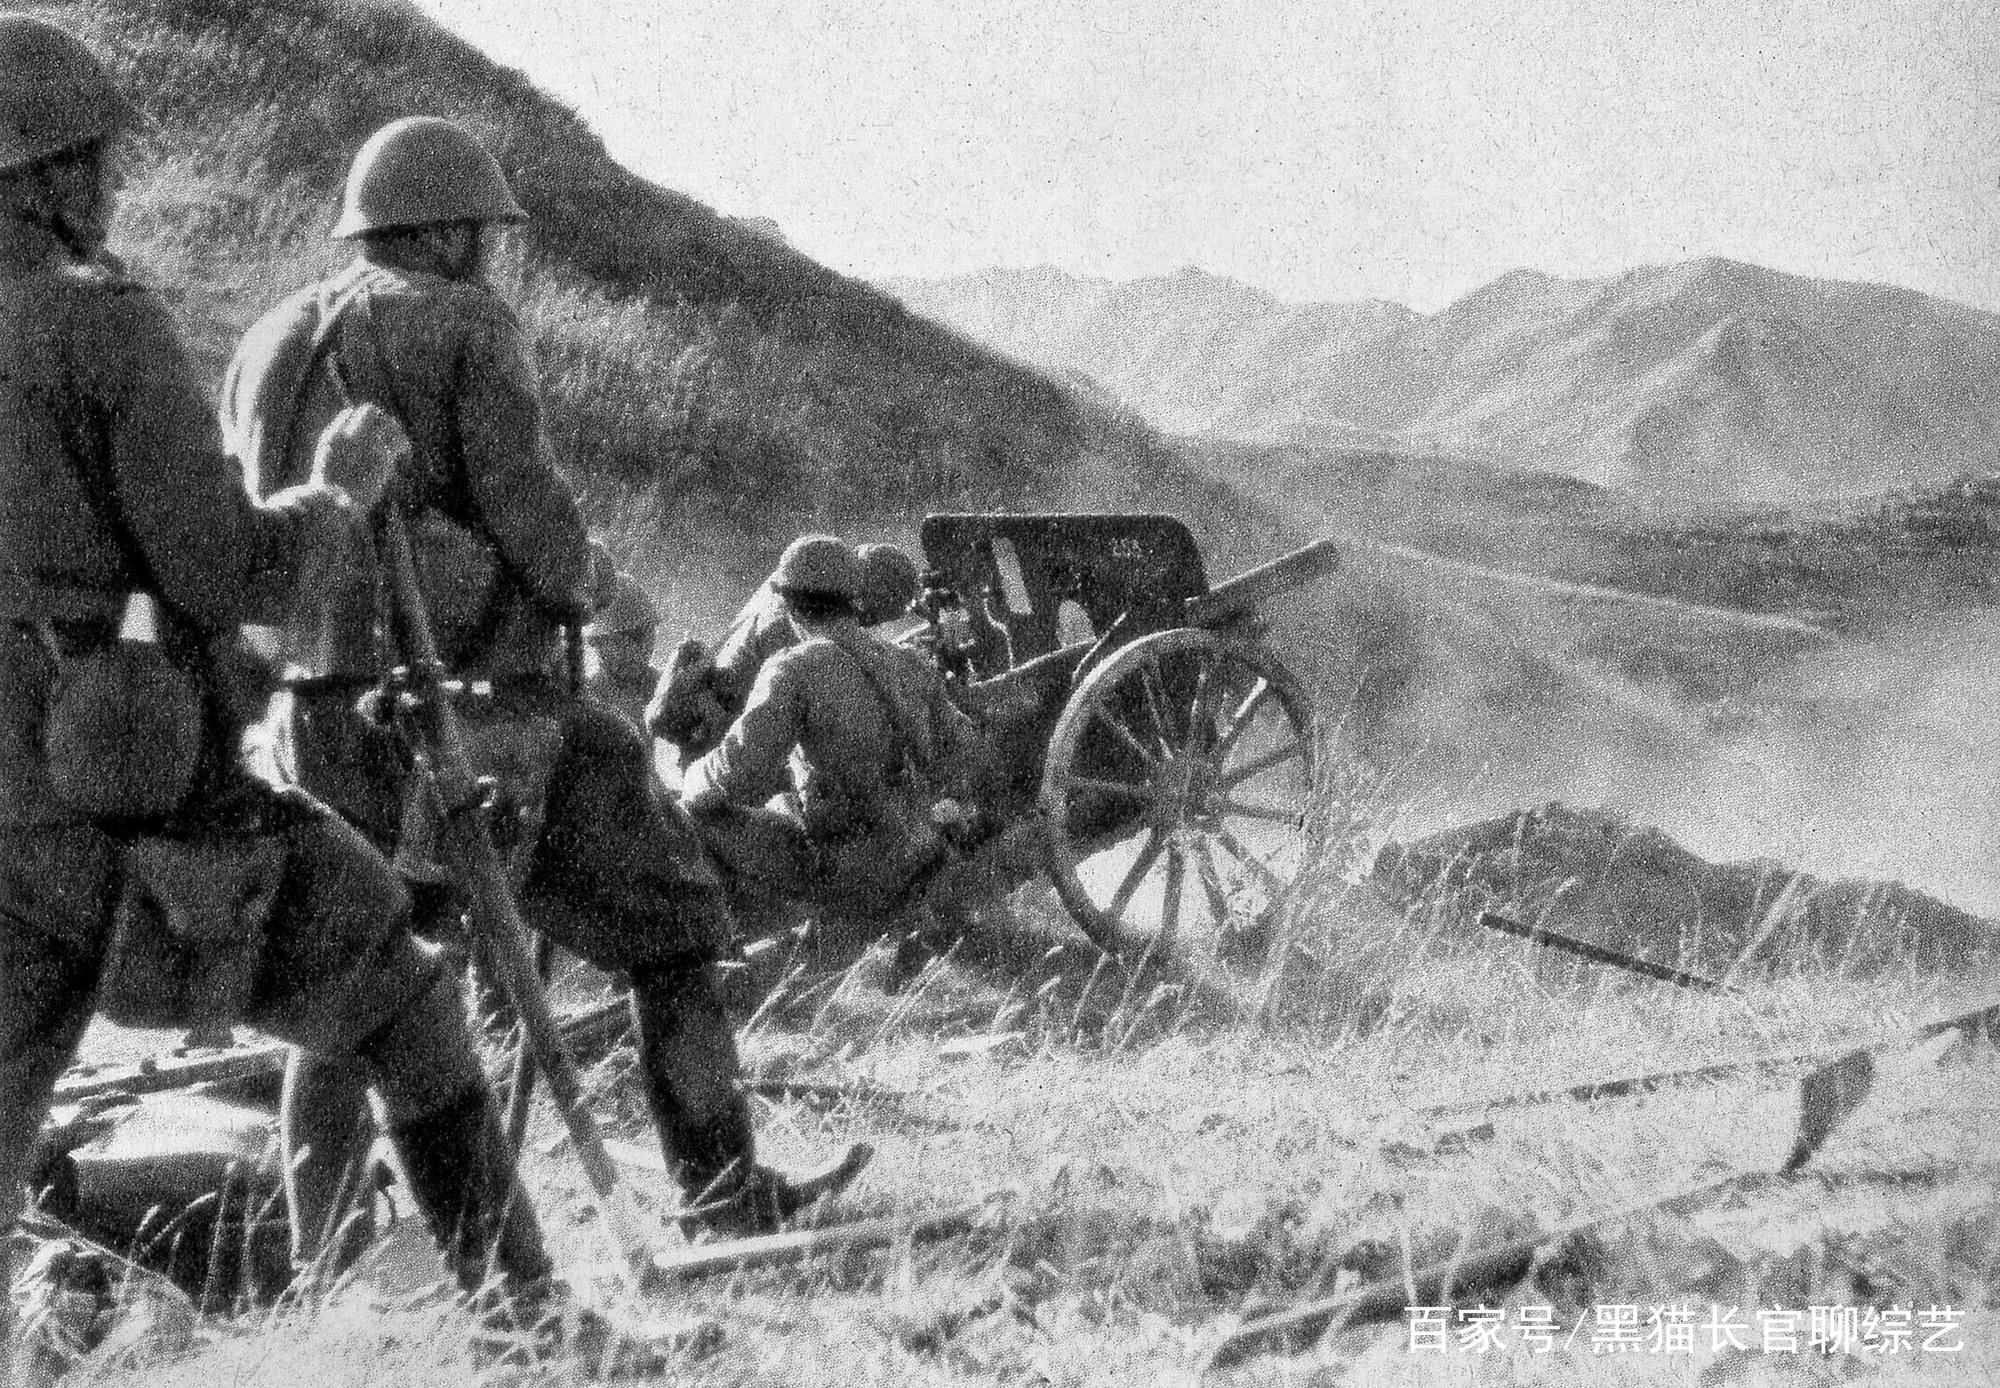 晋中战役:徐向前六万破十万,打崩阎锡山留用的侵华日军十总队